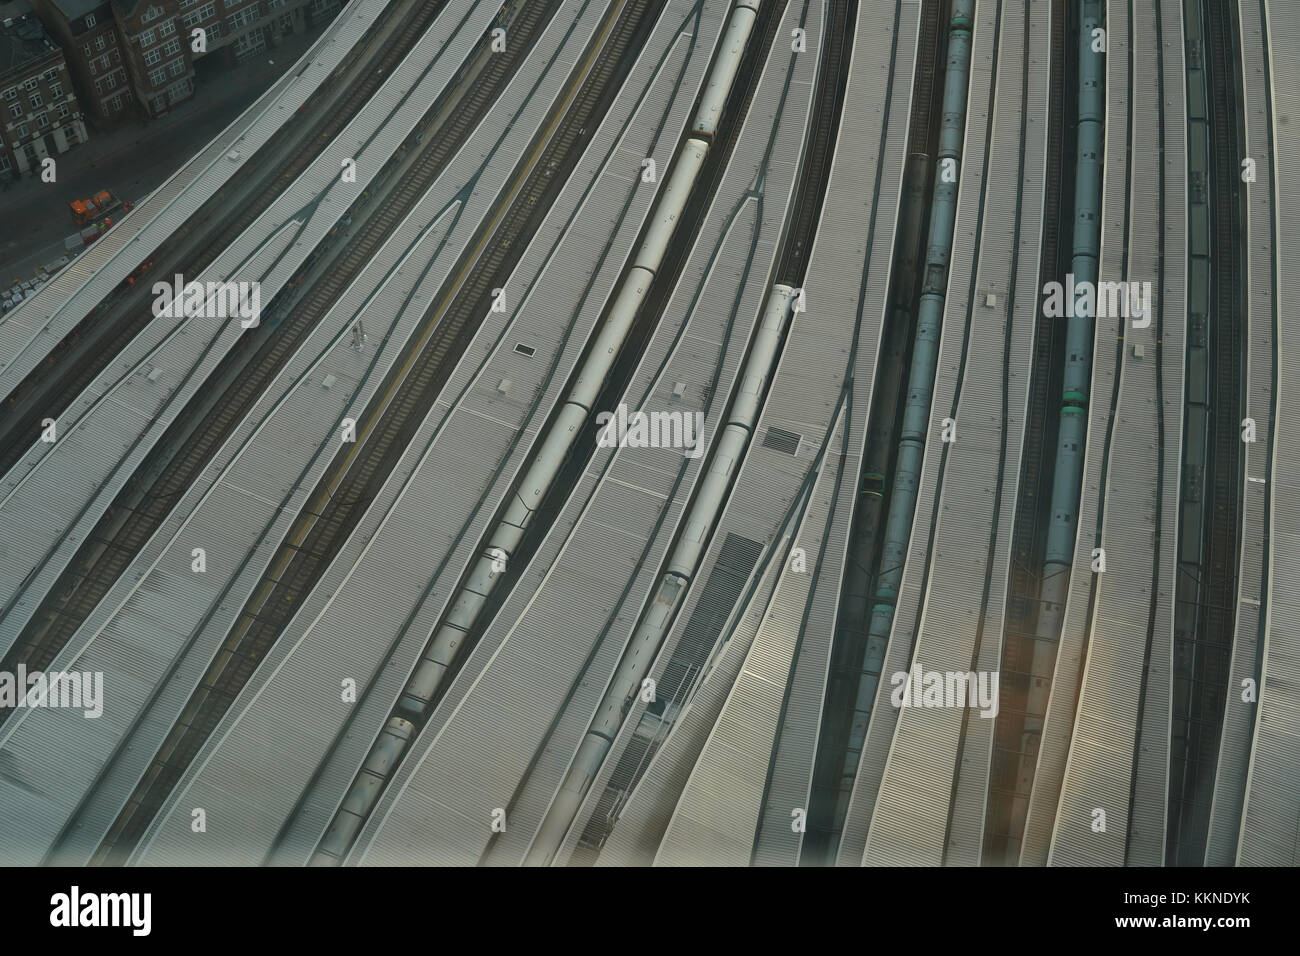 Ein Blick auf die London Bridge Bahnhof von der Oberseite der Shard, der britischen Hauptstadt höchste Gebäude. foto Datum: Mittwoch, 22. November 2017. ph Stockfoto